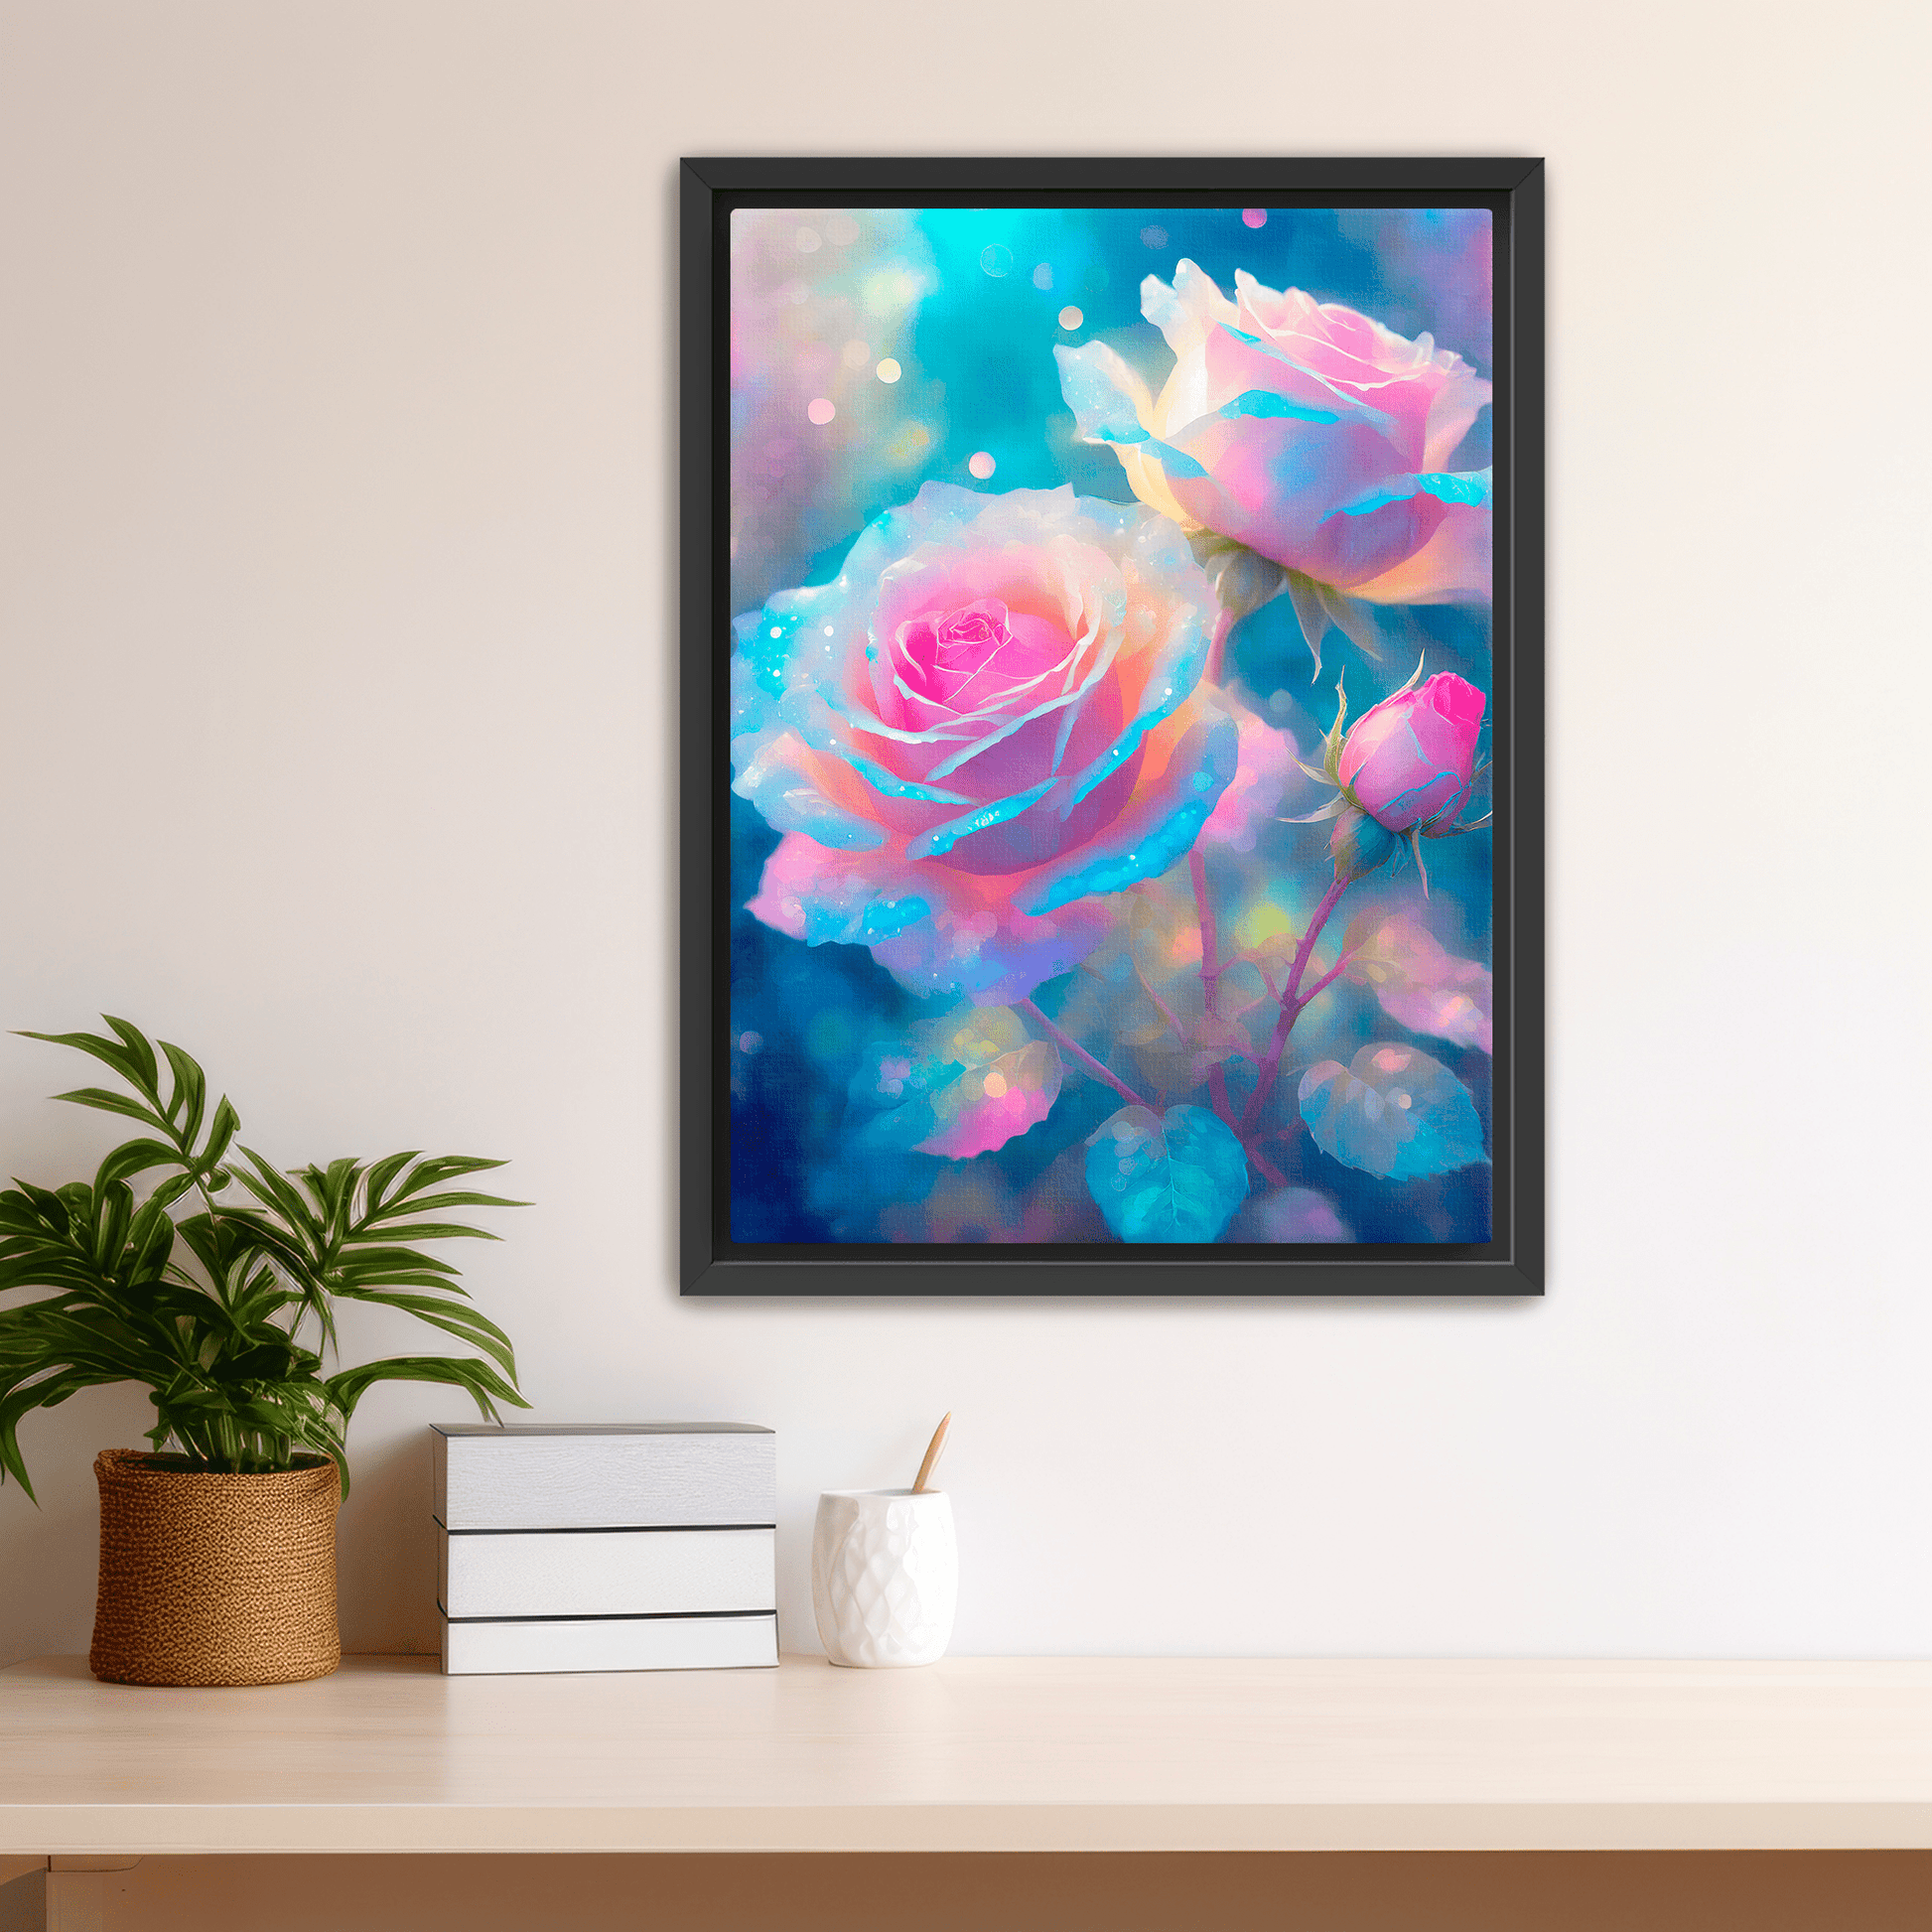 Celestial Roses - Canvas Wrap - Premium Canvas Wrap